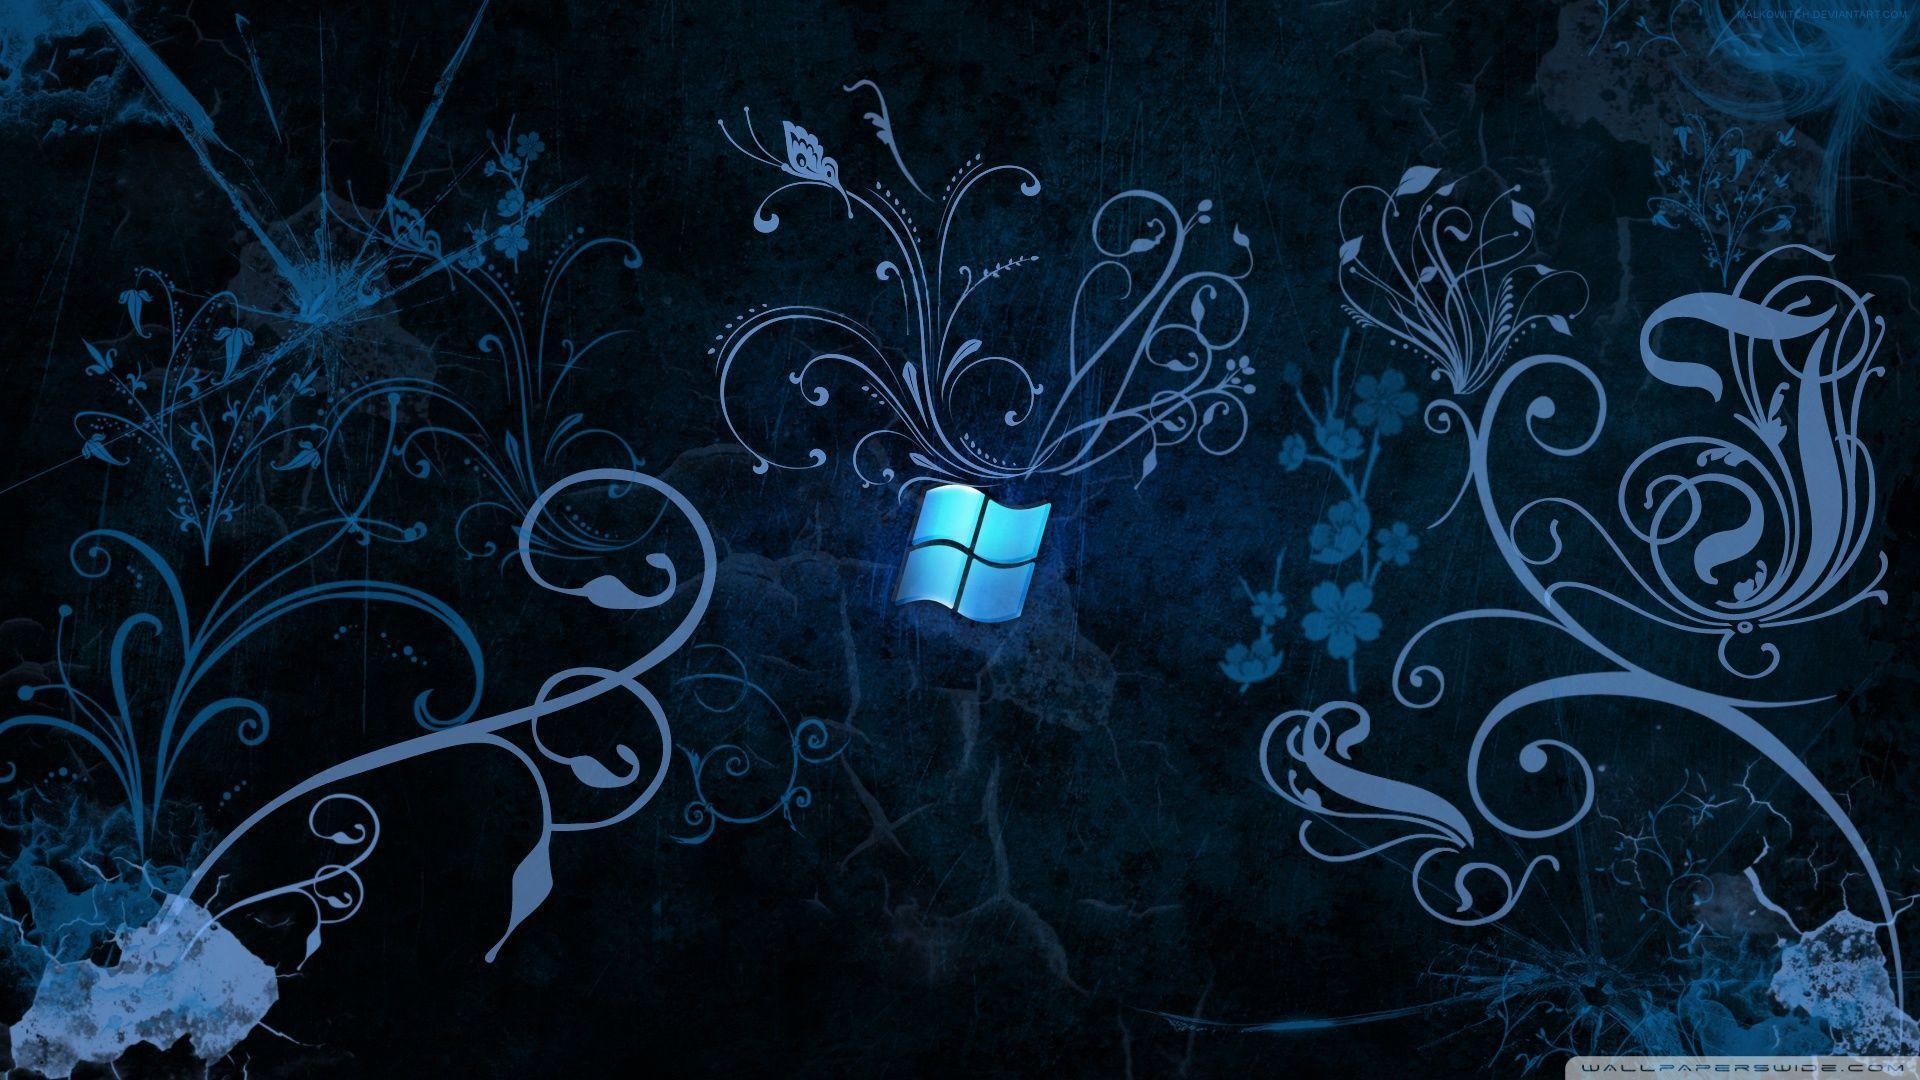 Windows 8.1 HD Wallpaper 1920X1080